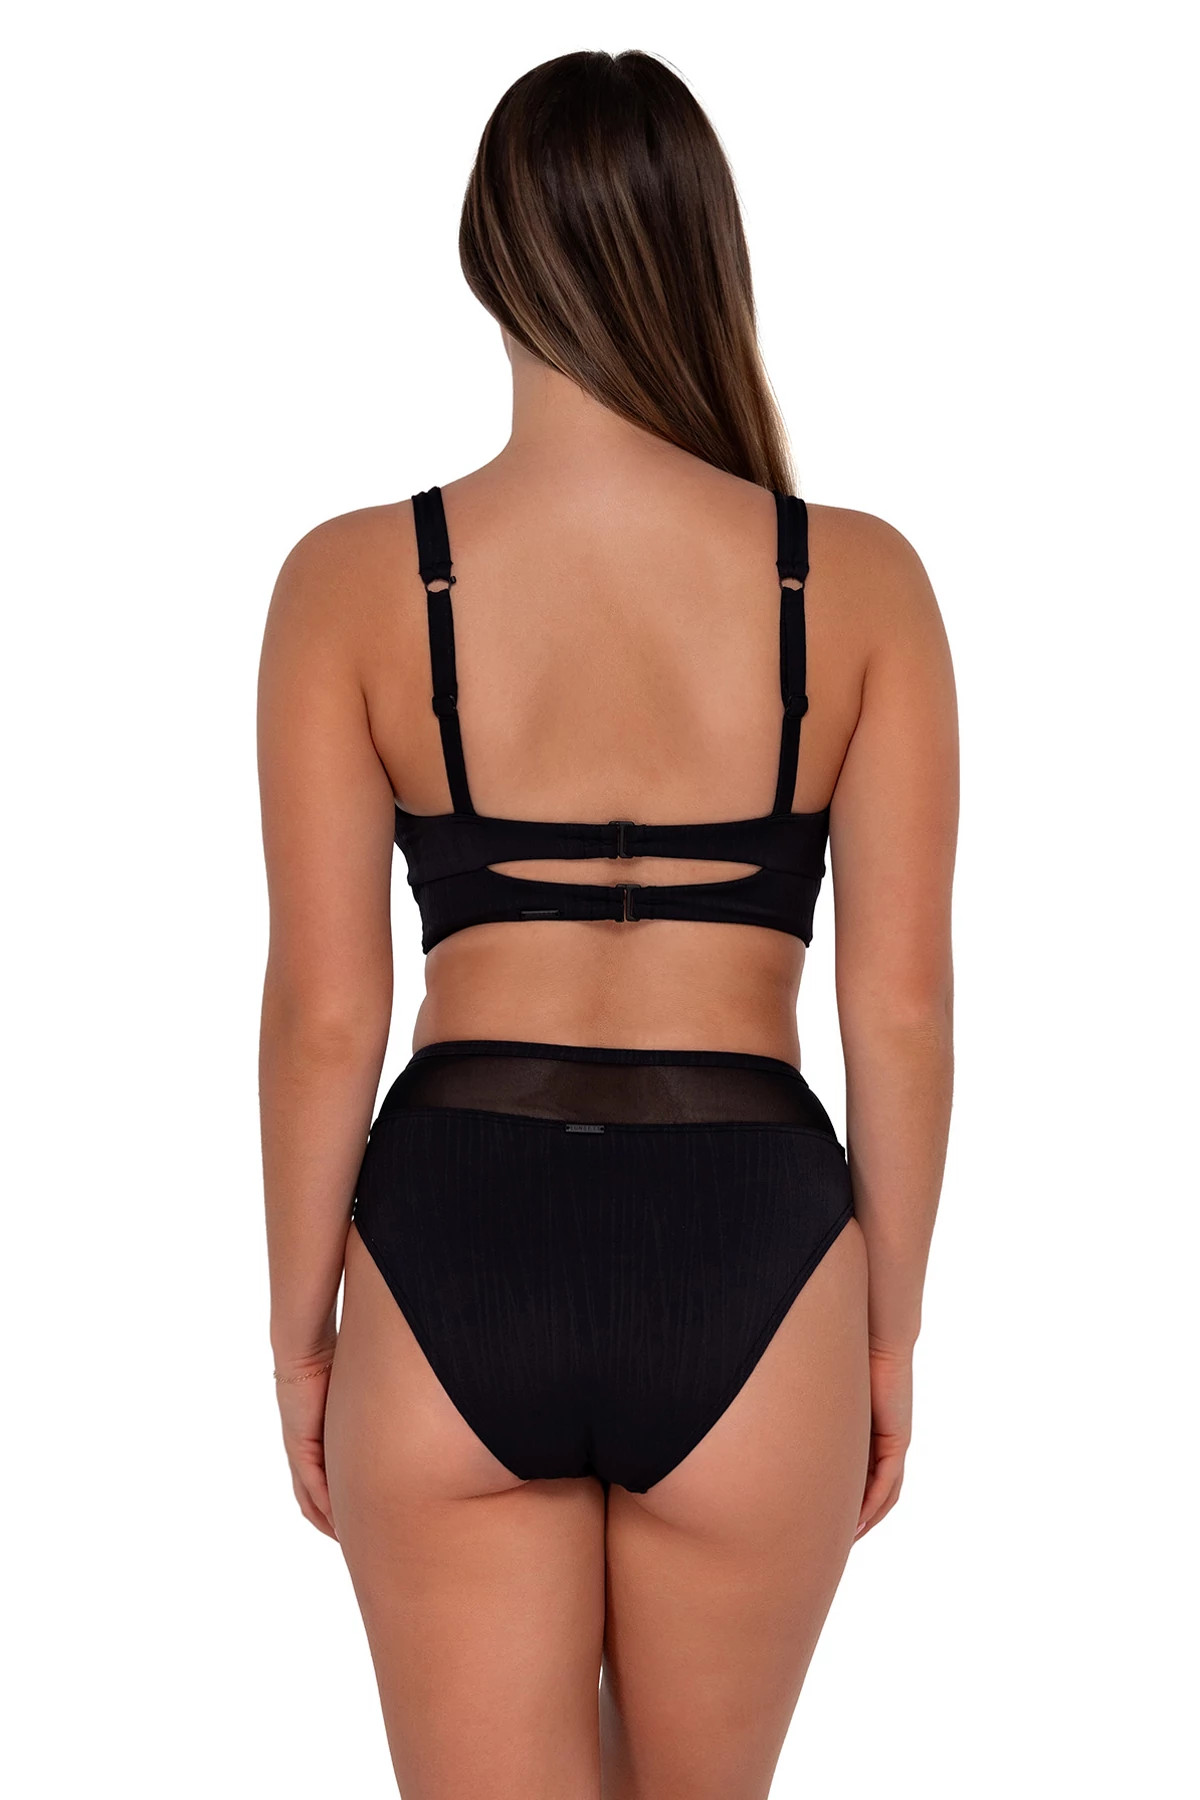 BLACK SEAGRASS TEXTURE Danica Underwire Bikini Top (E-H Cup) image number 3